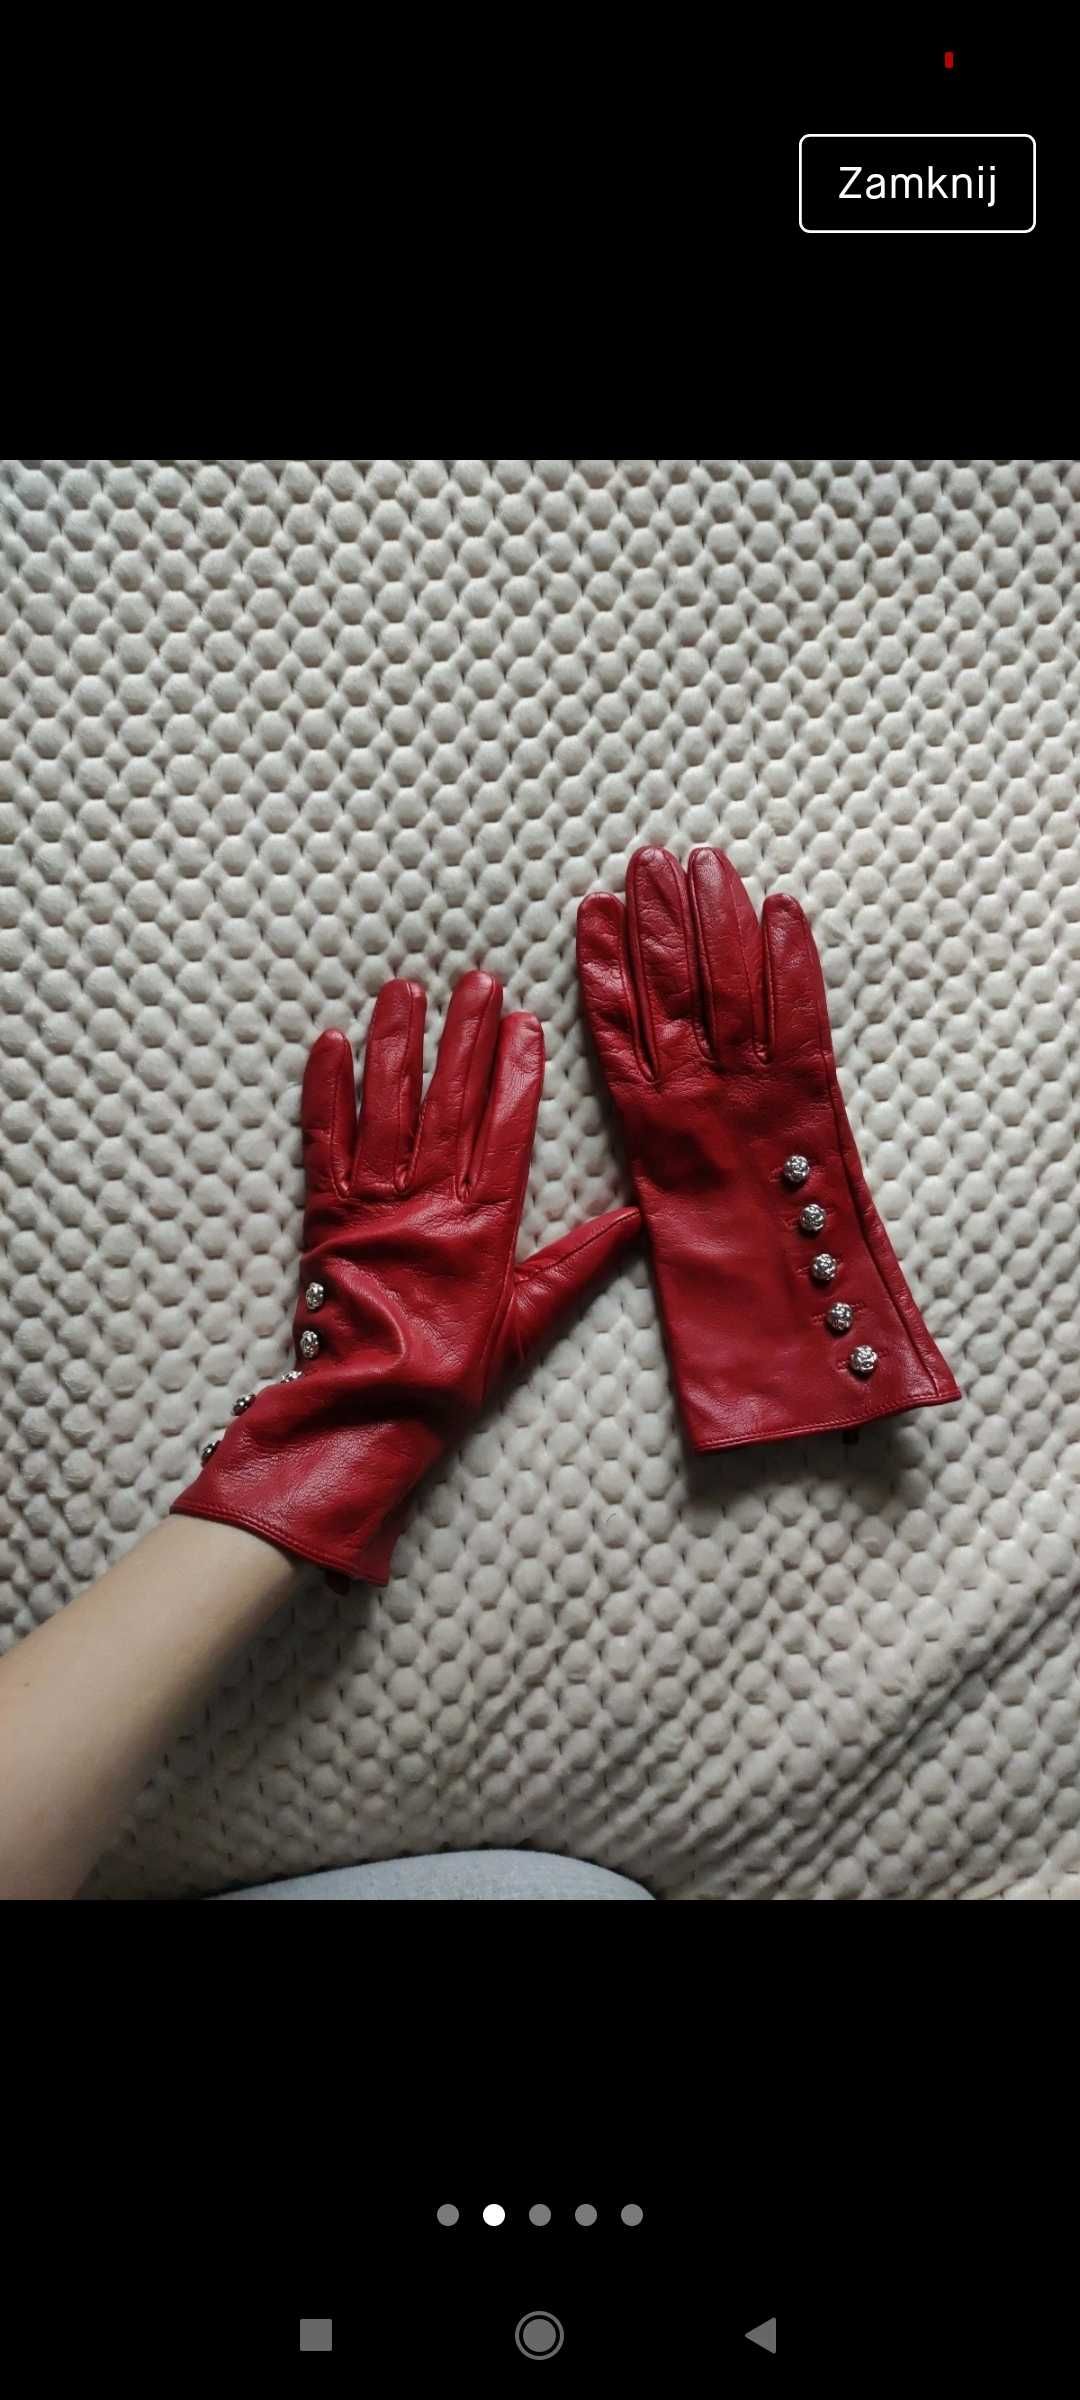 Rękawiczki ze skóry, czerwone rękawiczki, rękawiczki, leather dents